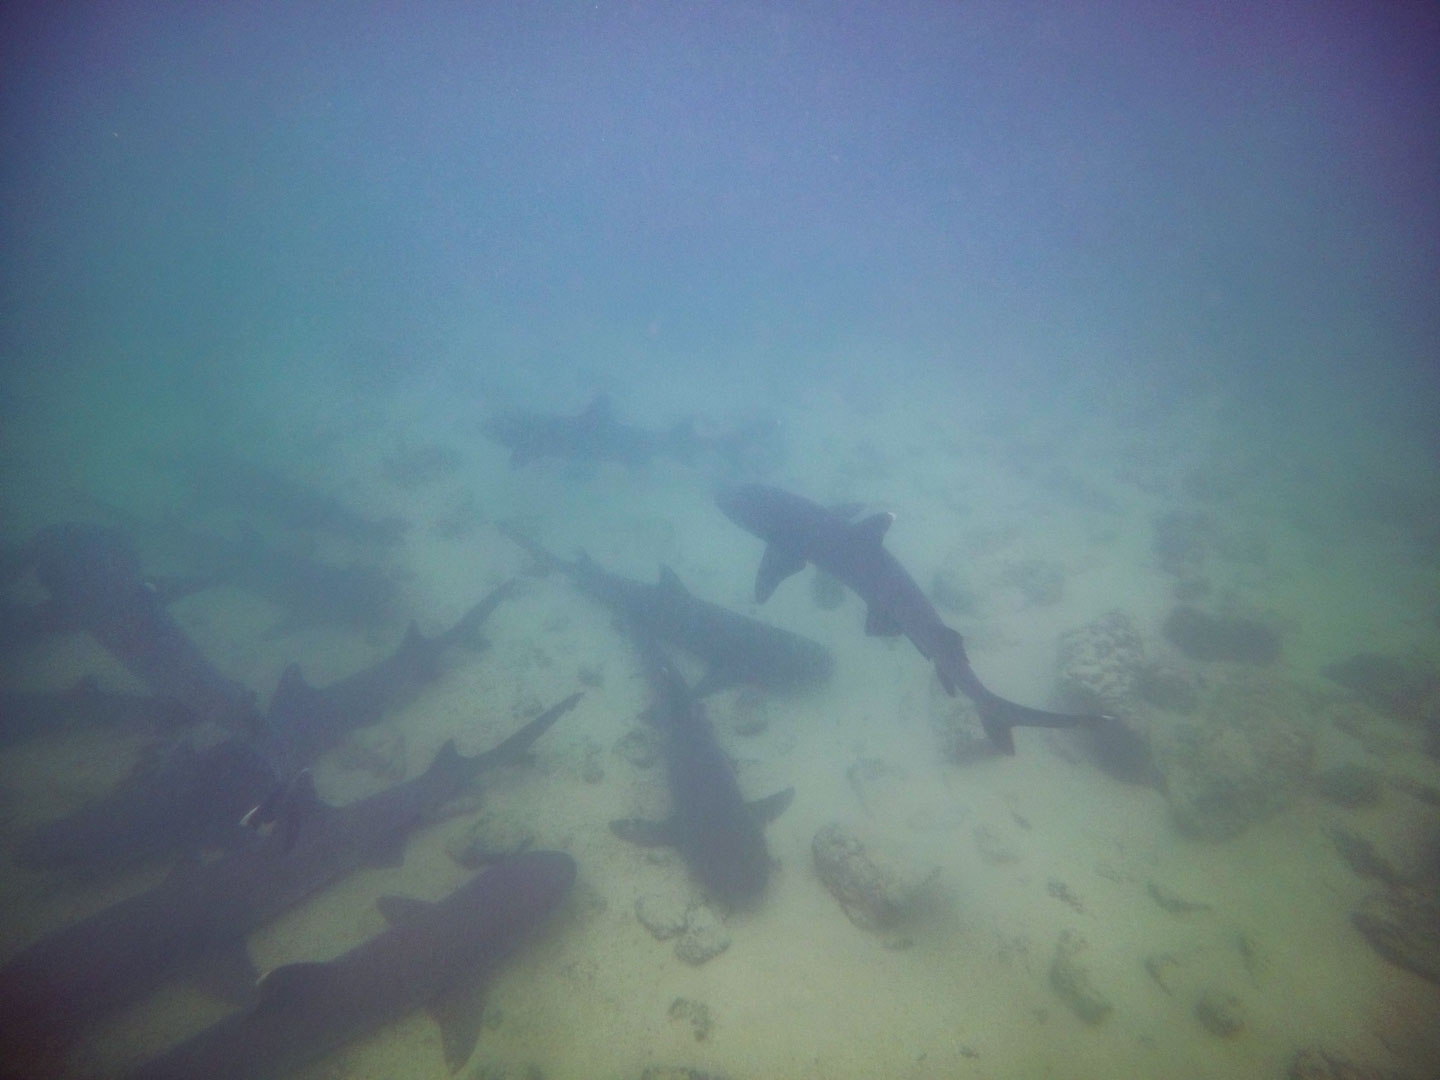 Swimming with sharks at the lagoon next to Playa Rosa Blanca, San Cristóbal, Galápagos Islands, Ecuador